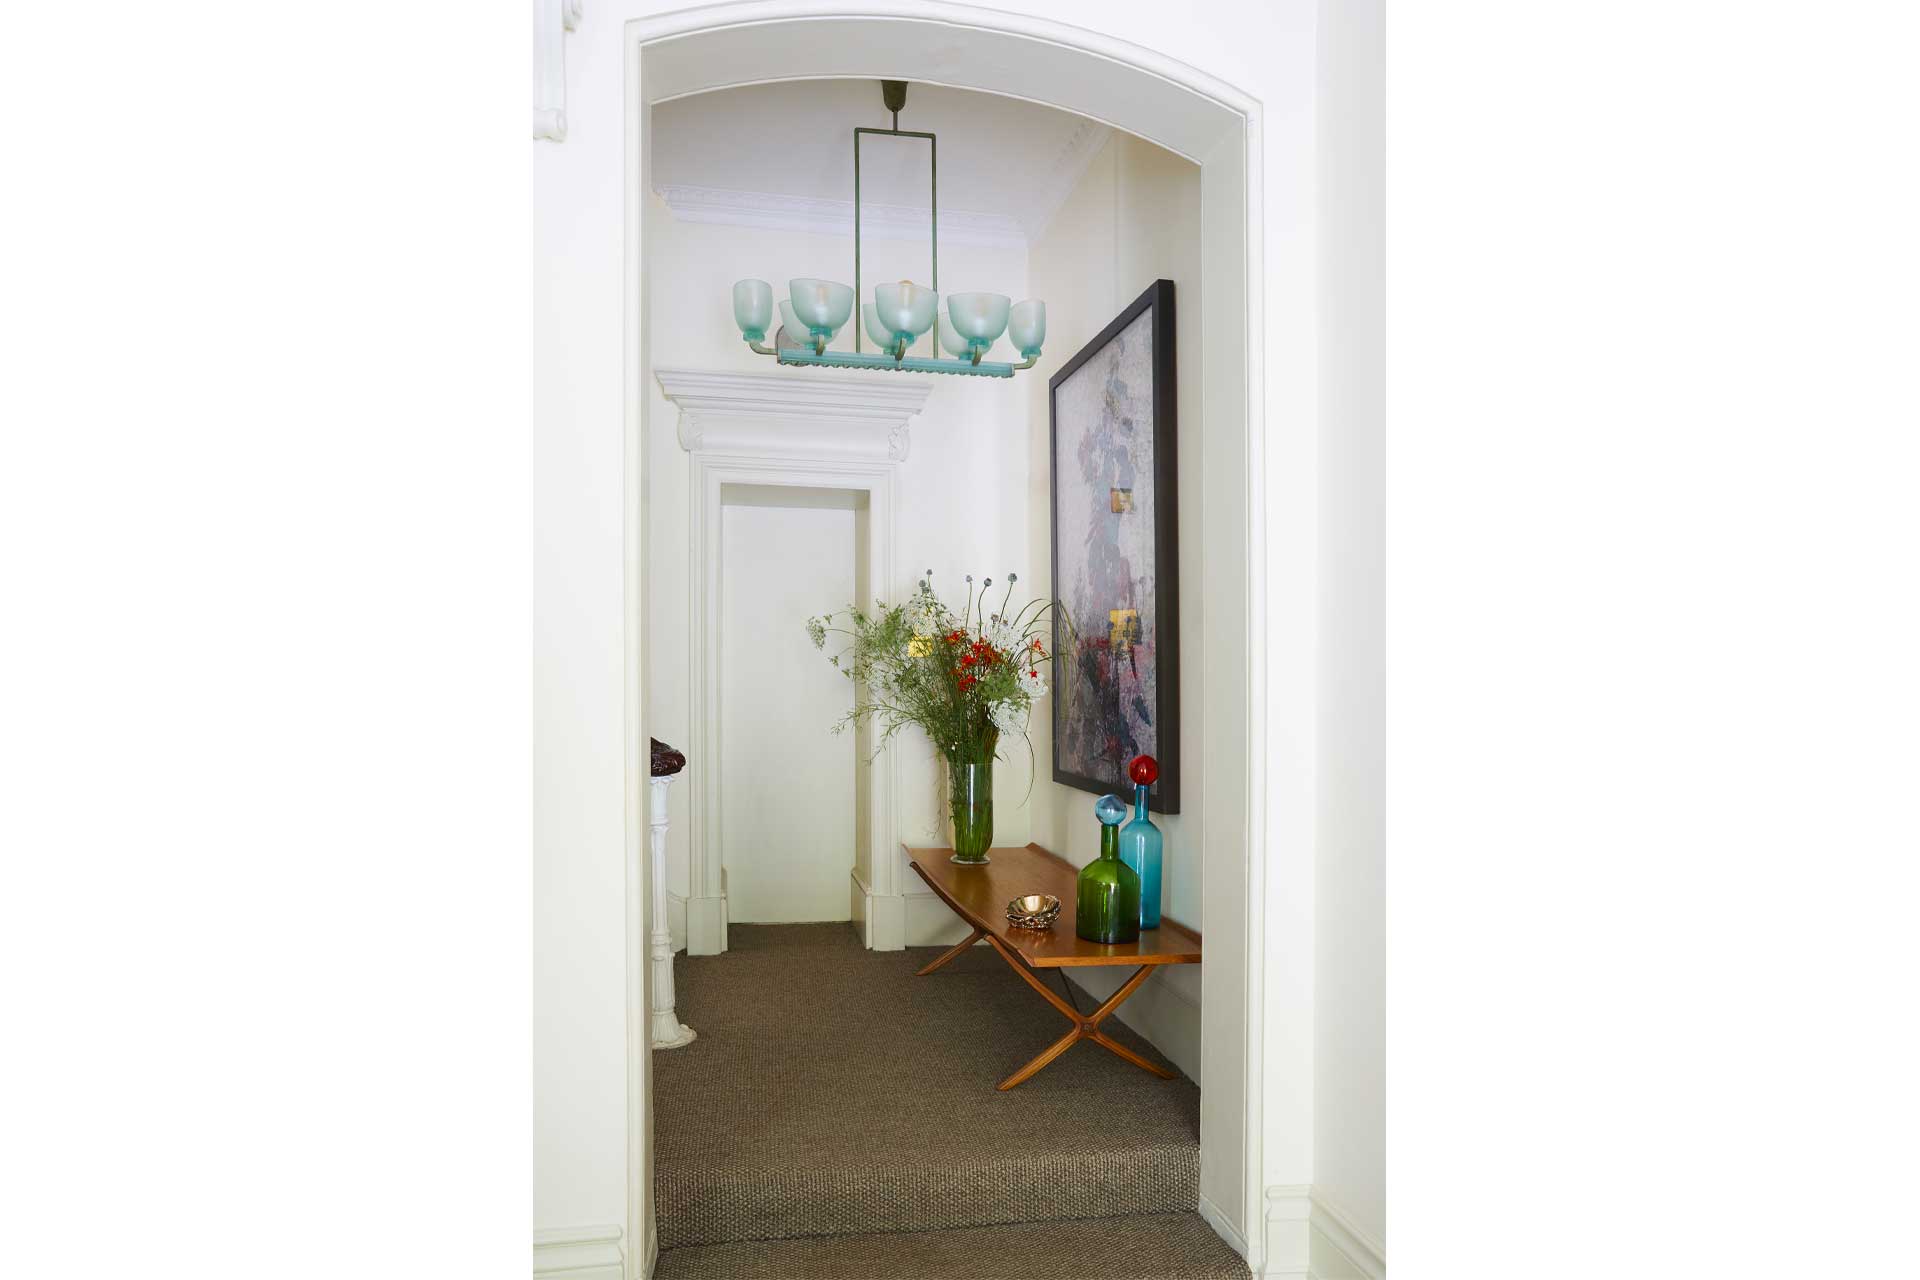 Miriam Frowein's hallway